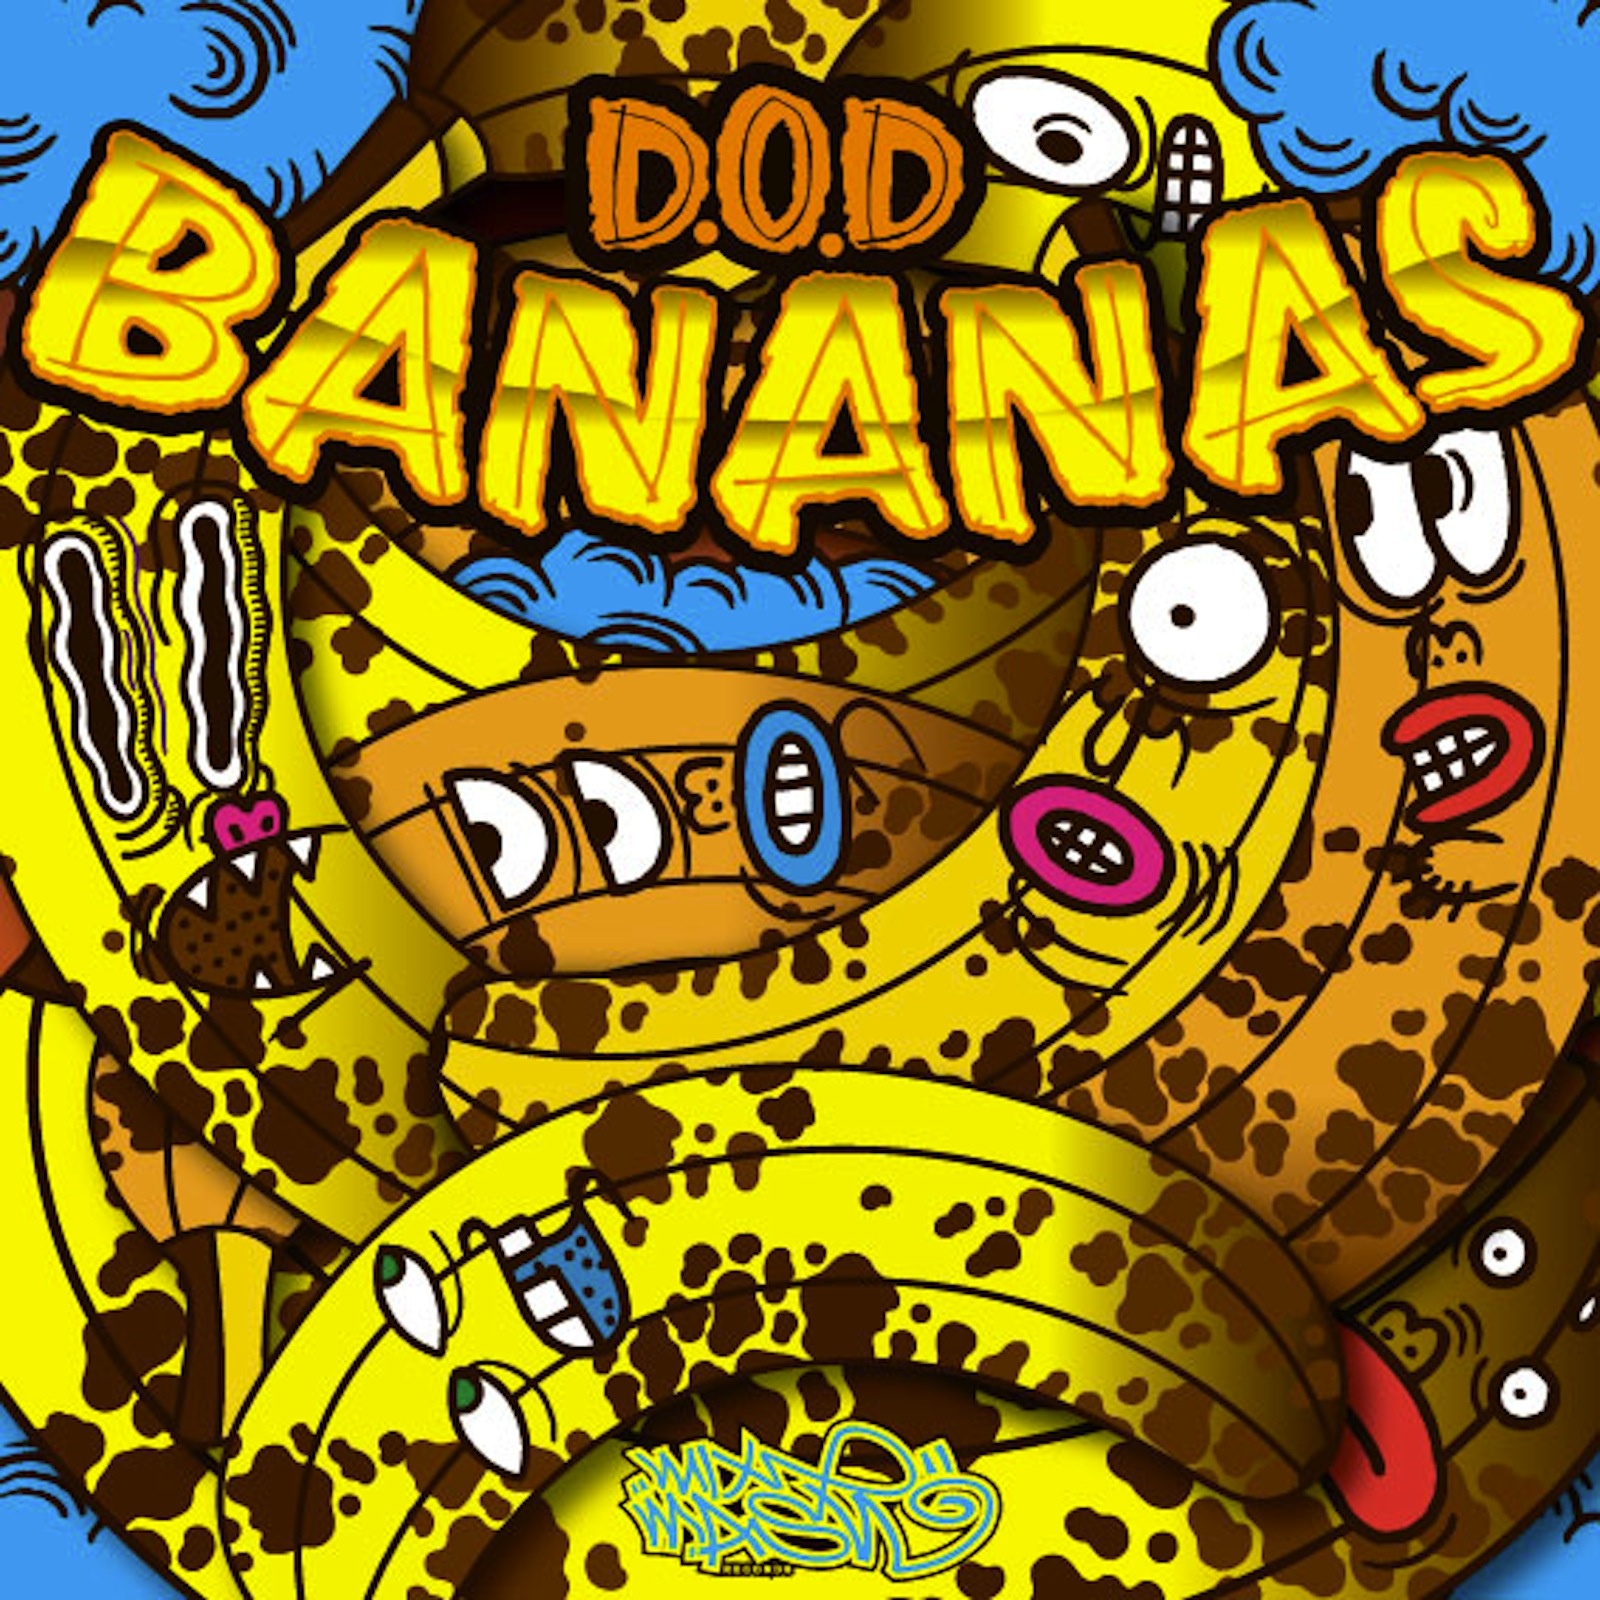 Bananas(Original Mix)